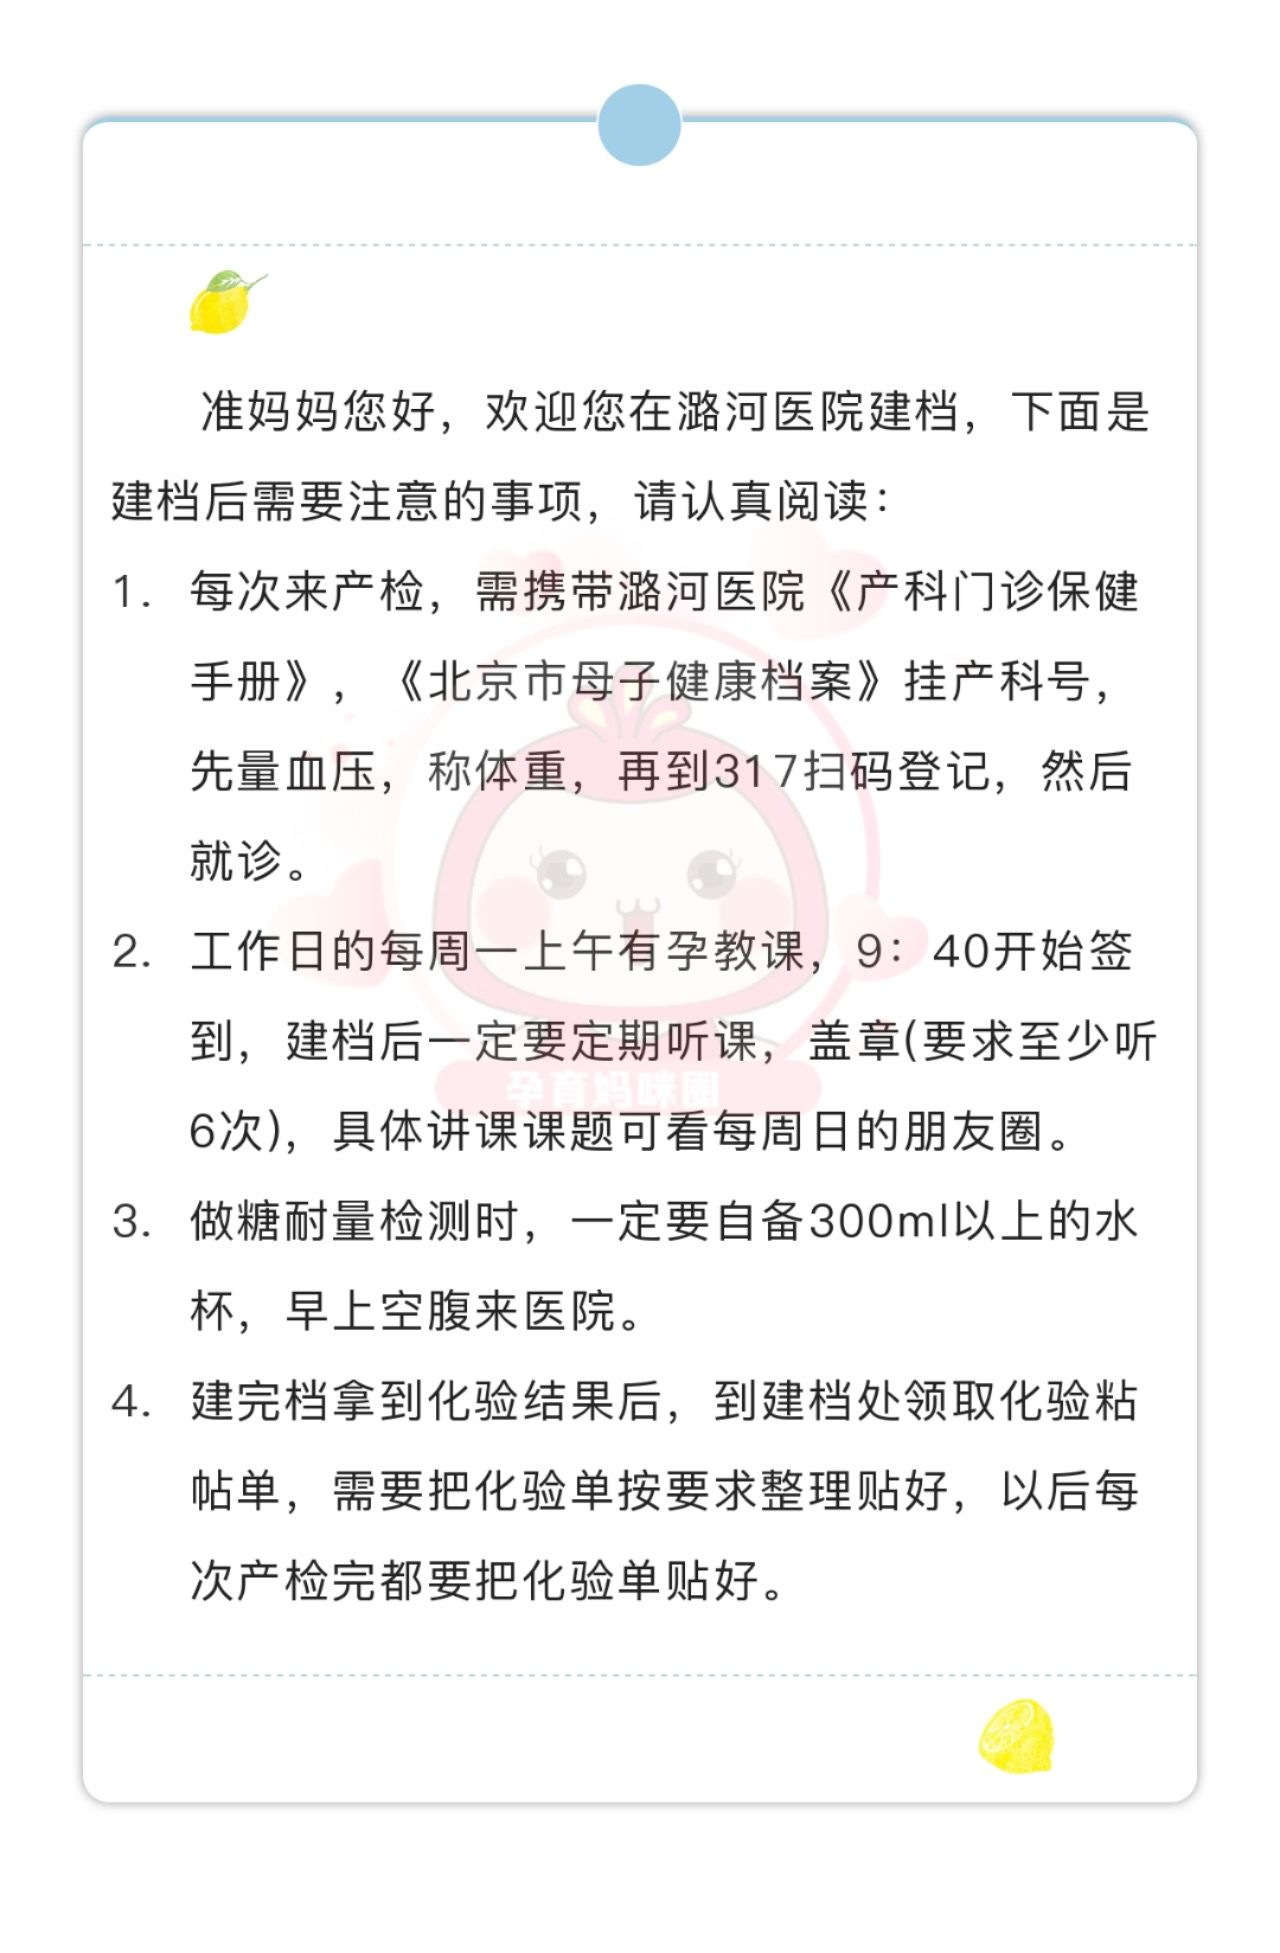 关于北京潞河医院号贩子电话,推荐这个跑腿很负责!联系方式优质服务的信息